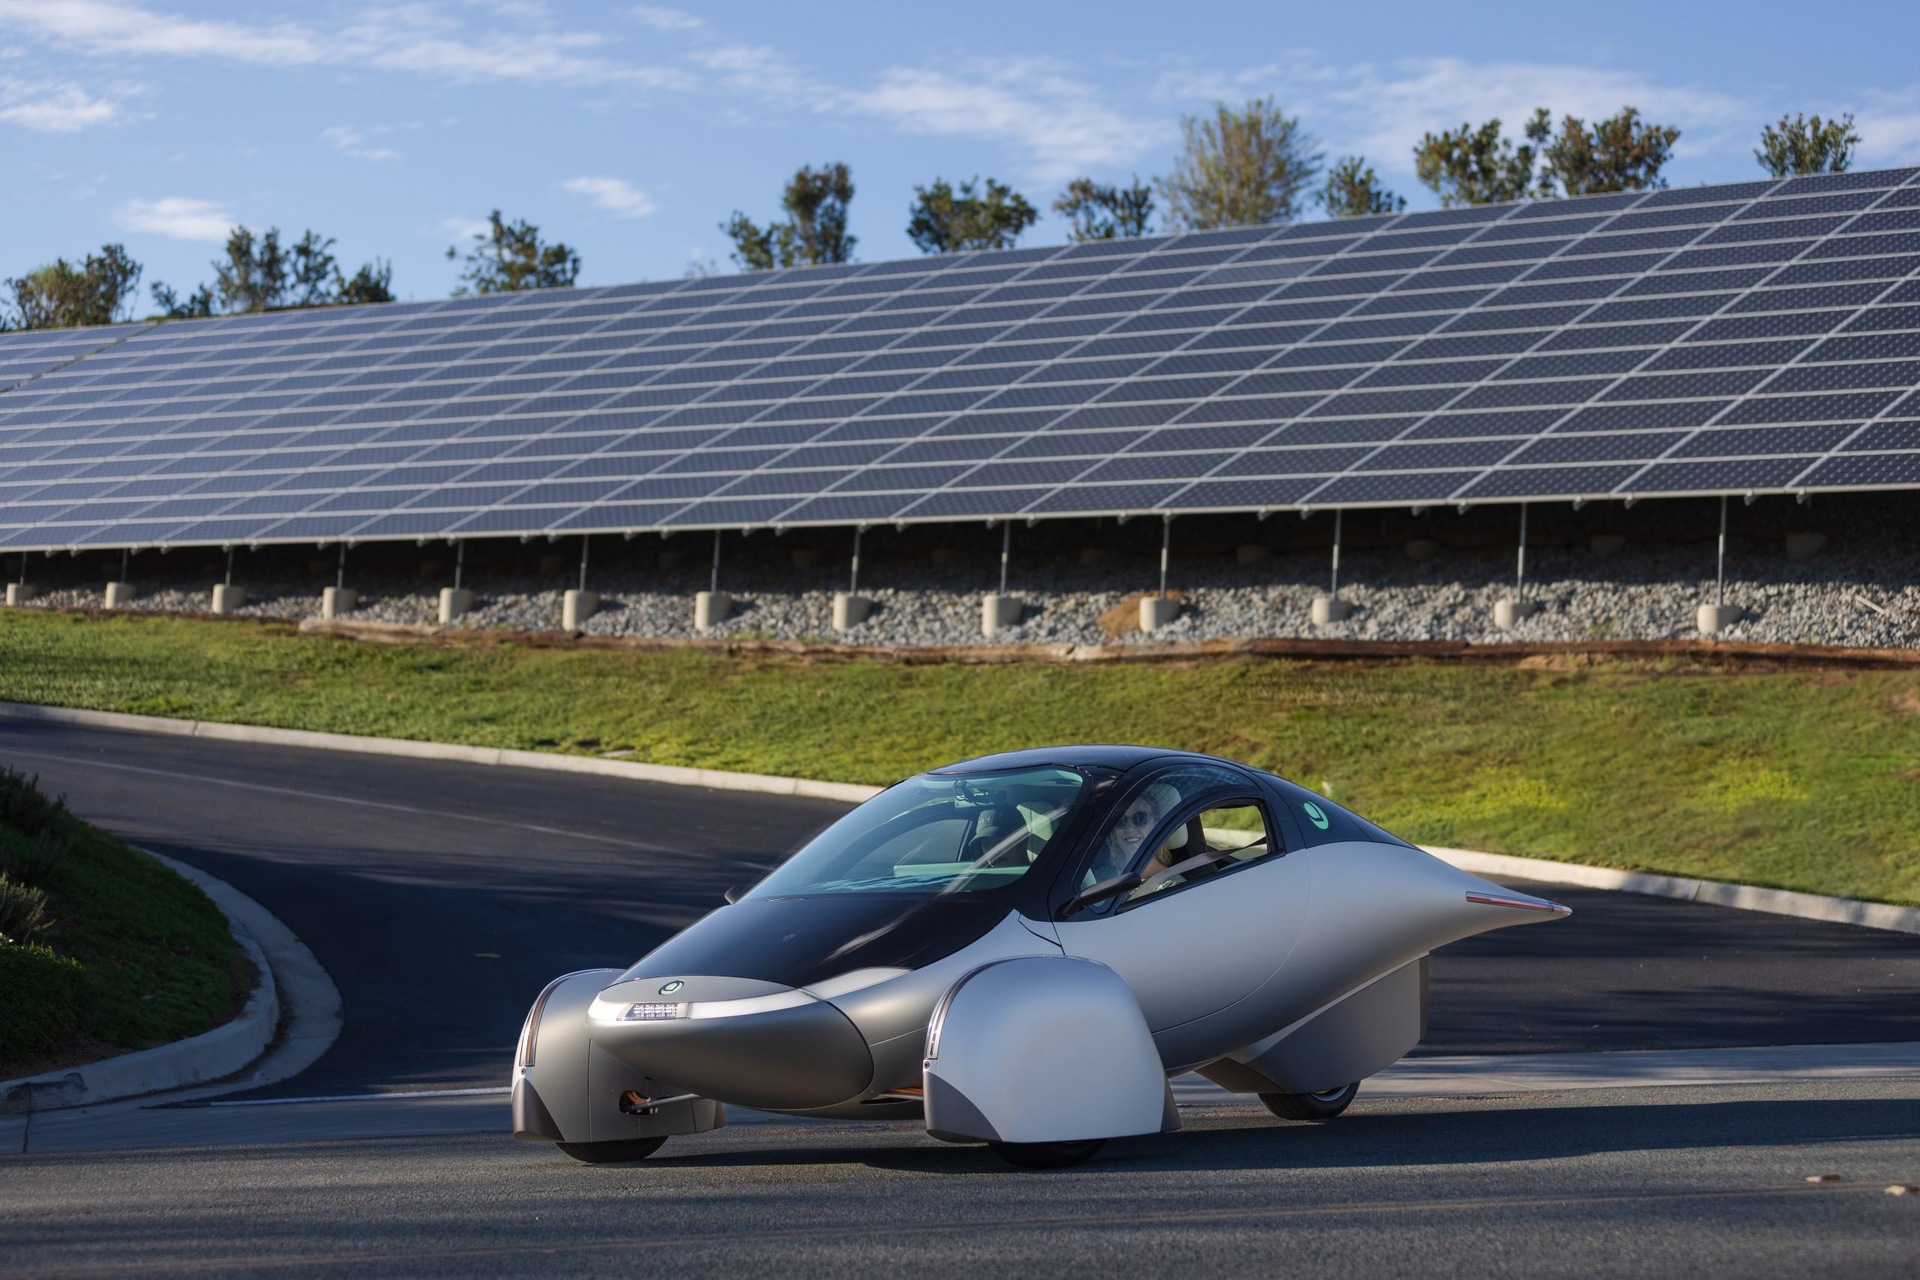 सौर कार: अप्टेरा डेल्टा दुनिया की सबसे टिकाऊ कार है, जिसकी बैटरी पावर पर 1600 किमी और सौर ऊर्जा पर 70 किमी की रेंज है।